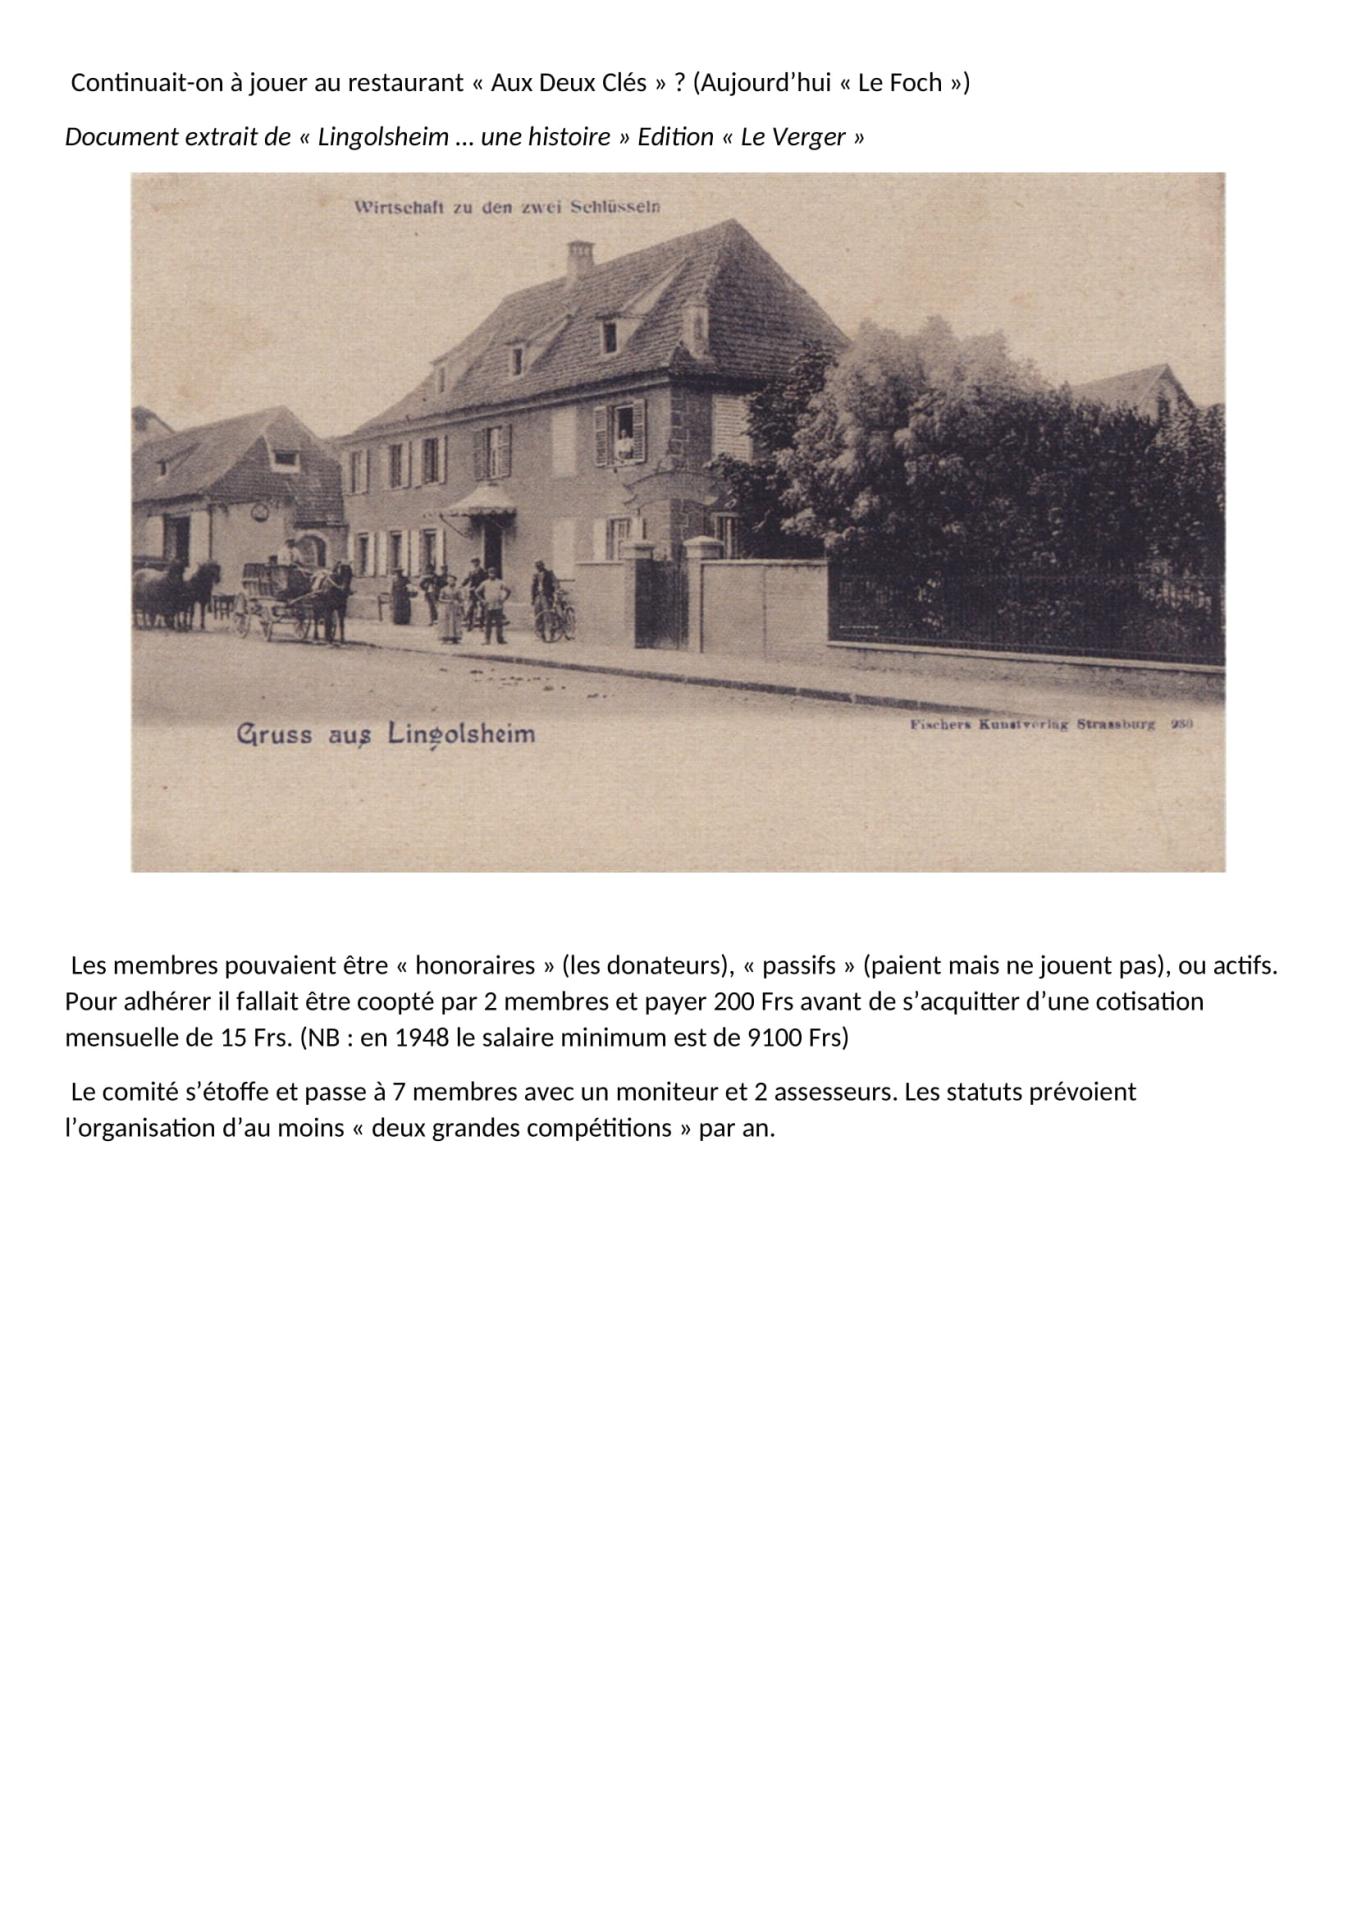 Historique succinct du billard club 1933 lingolsheim 05